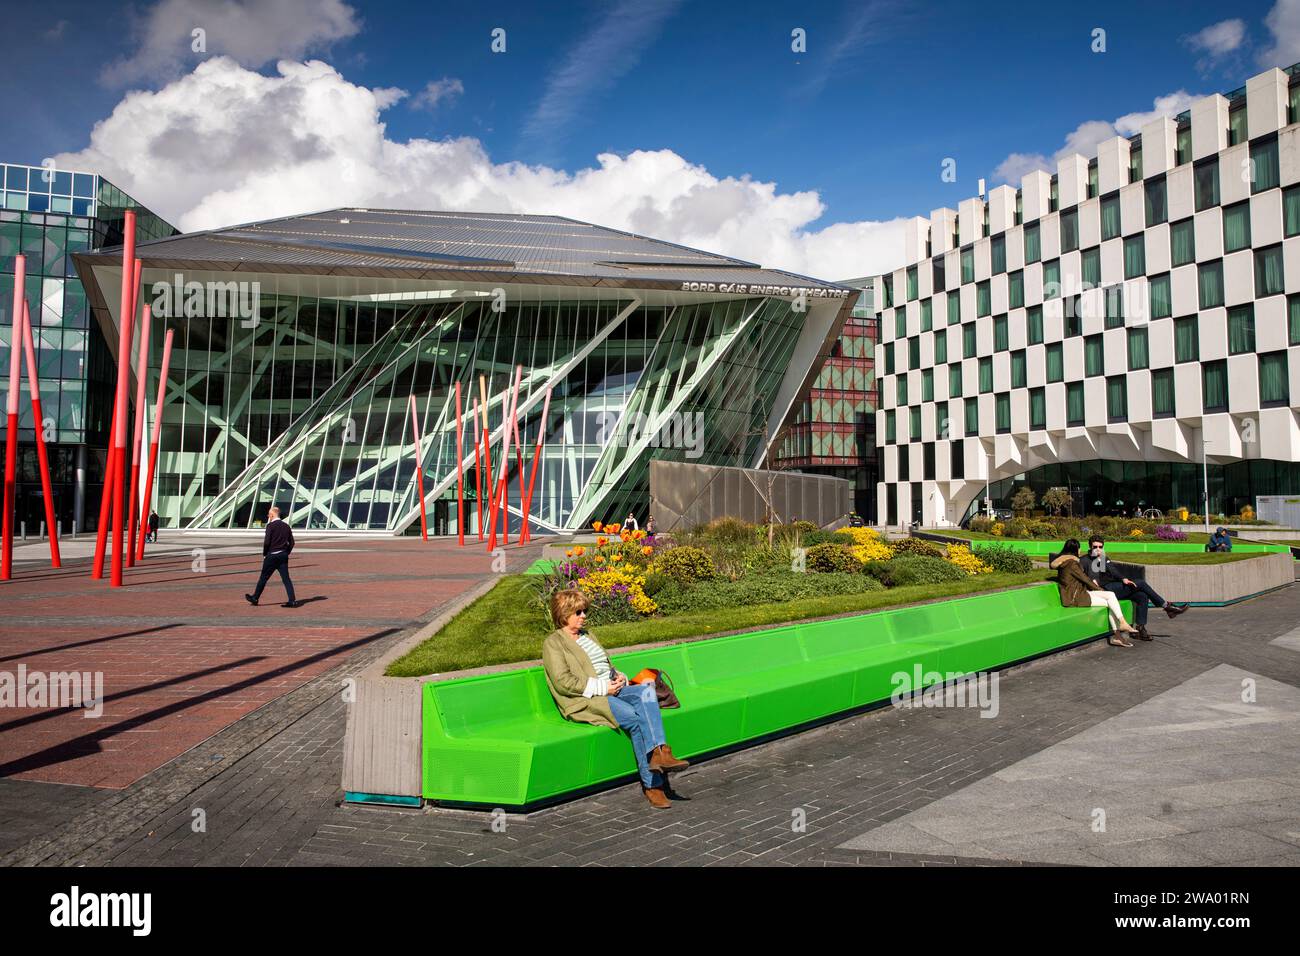 Irlanda, Dublino, Grand Canal Square, Bord Gais Energy Theatre Foto Stock